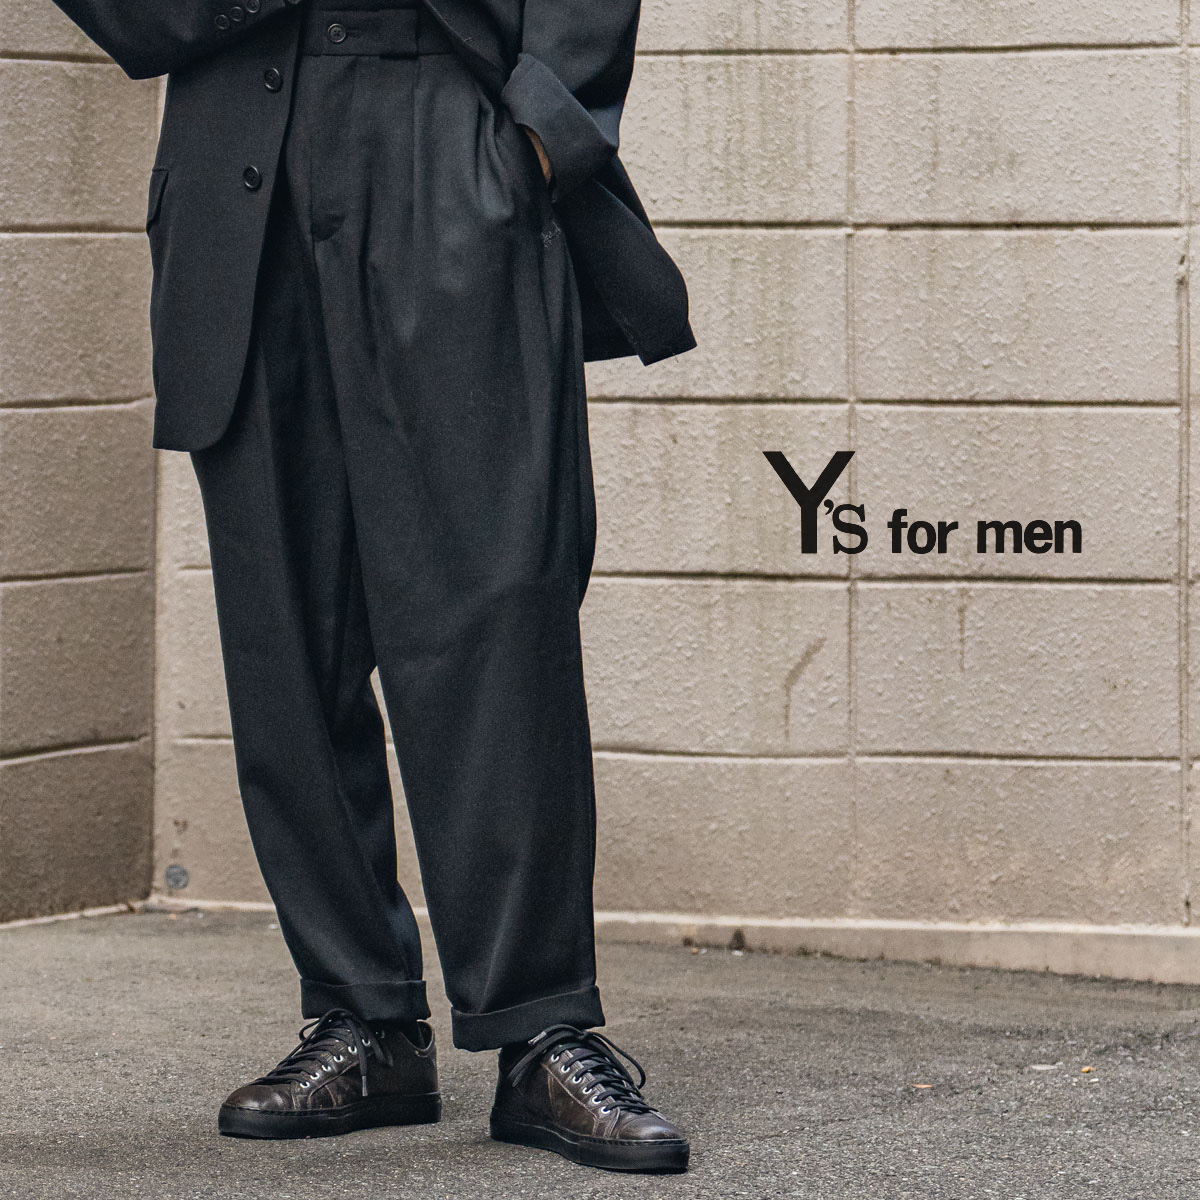 Y's for men 23AW サイドタブギャバジンパンツ | HUES 福岡セレクト 